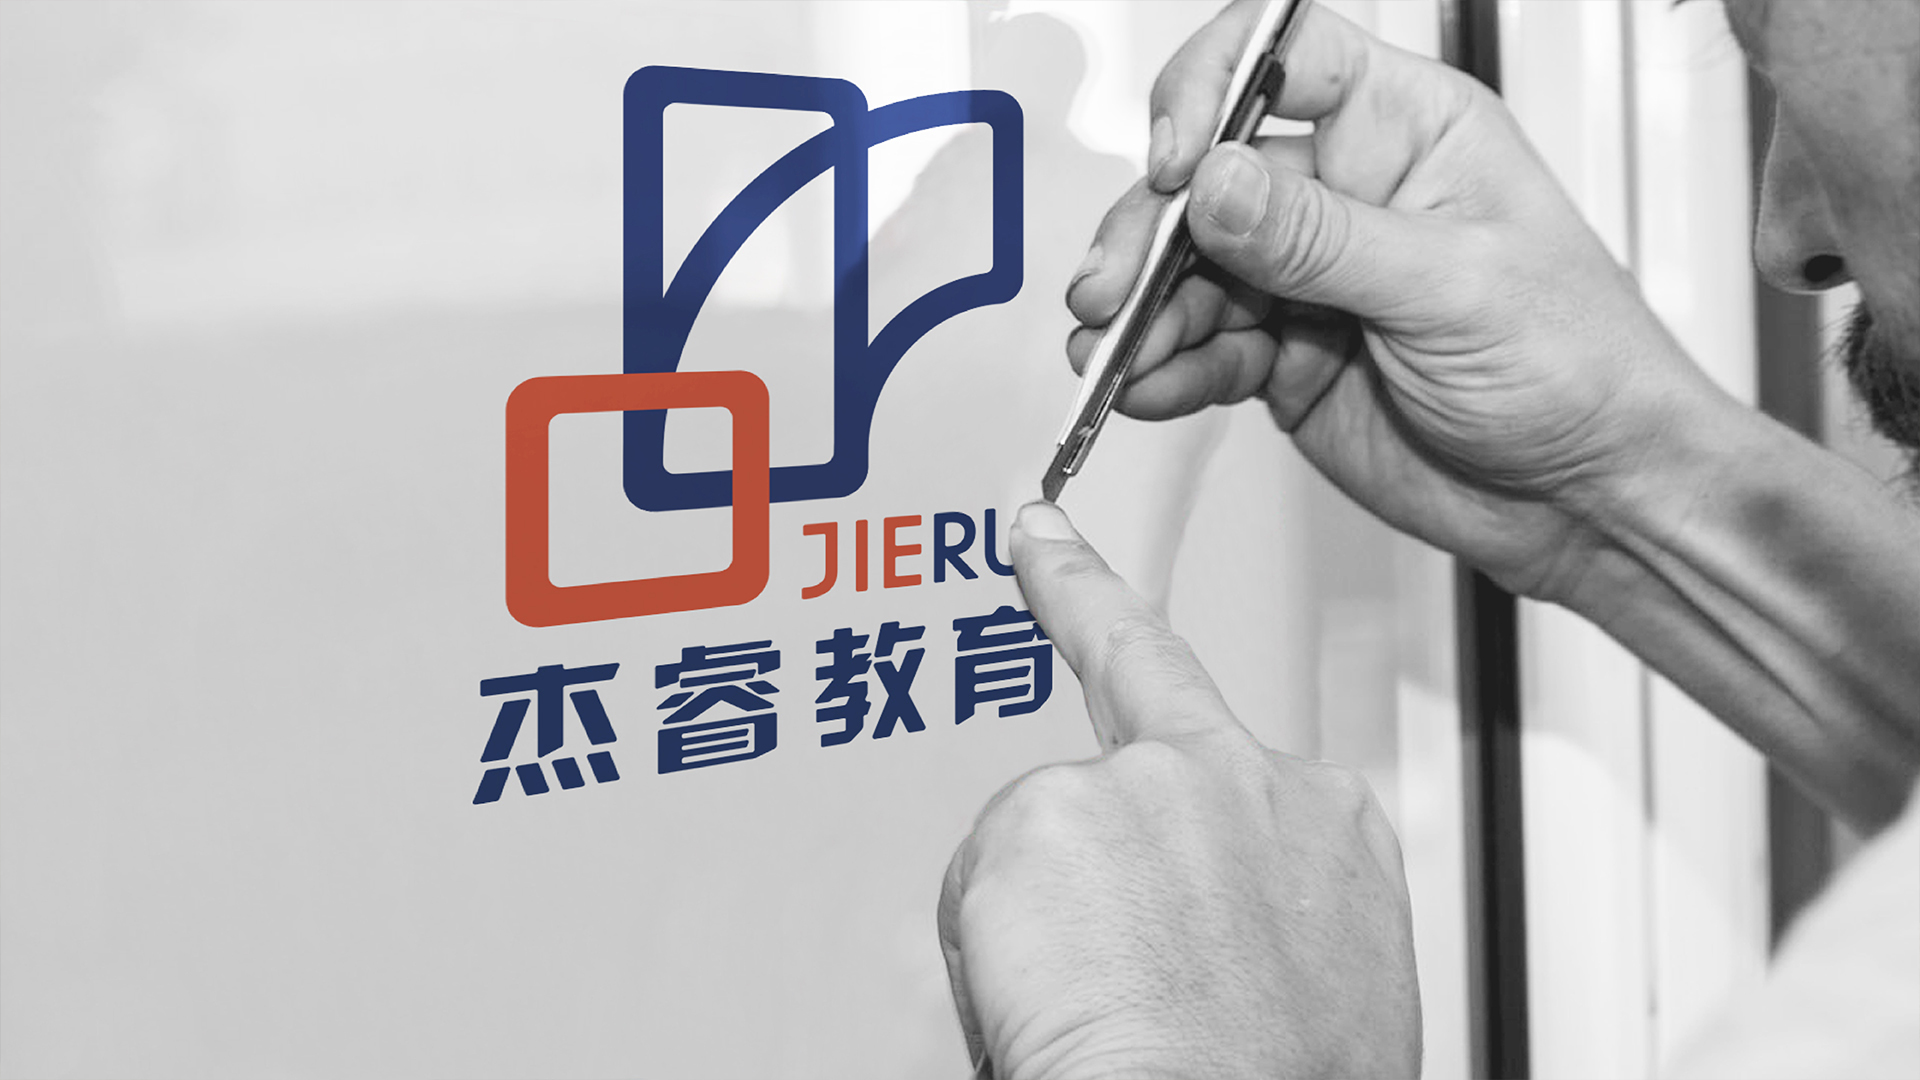 杰睿教育logo应用场景设计